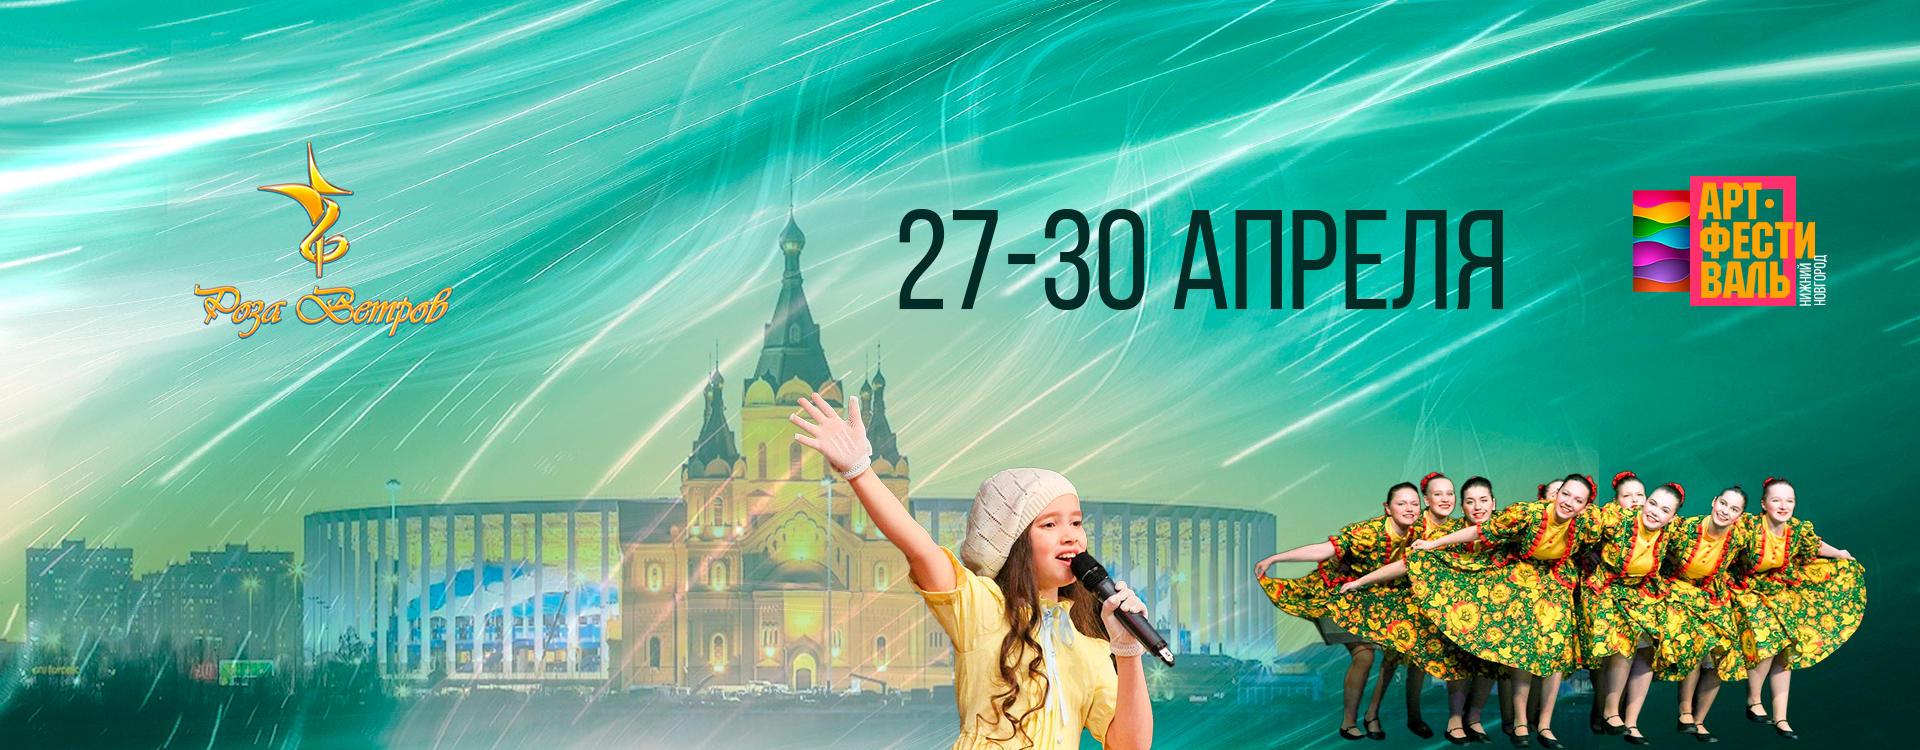 АРТ-Фестиваль «Роза Ветров» в Нижнем Новгороде